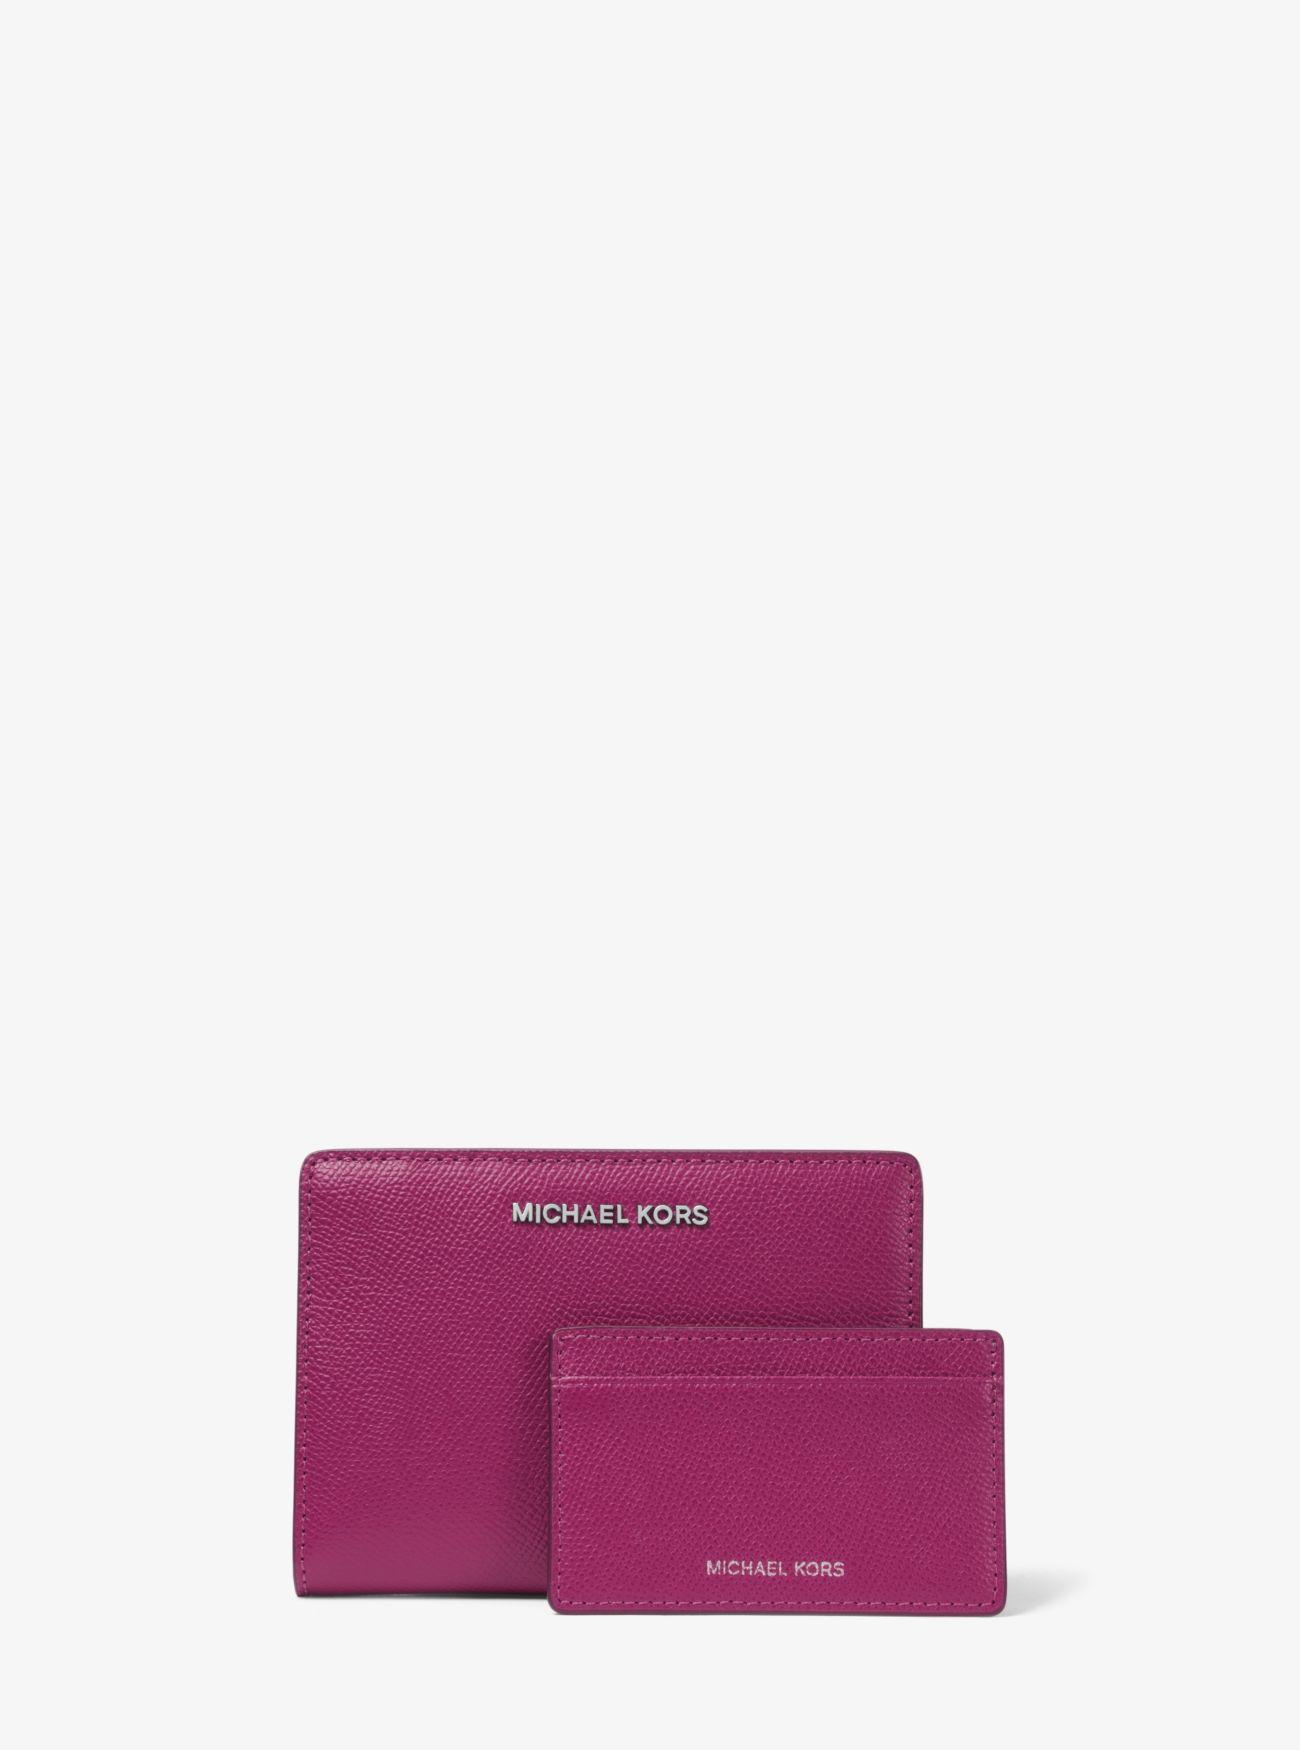 Michael Kors Medium Crossgrain Leather Slim Wallet in Red (Purple 